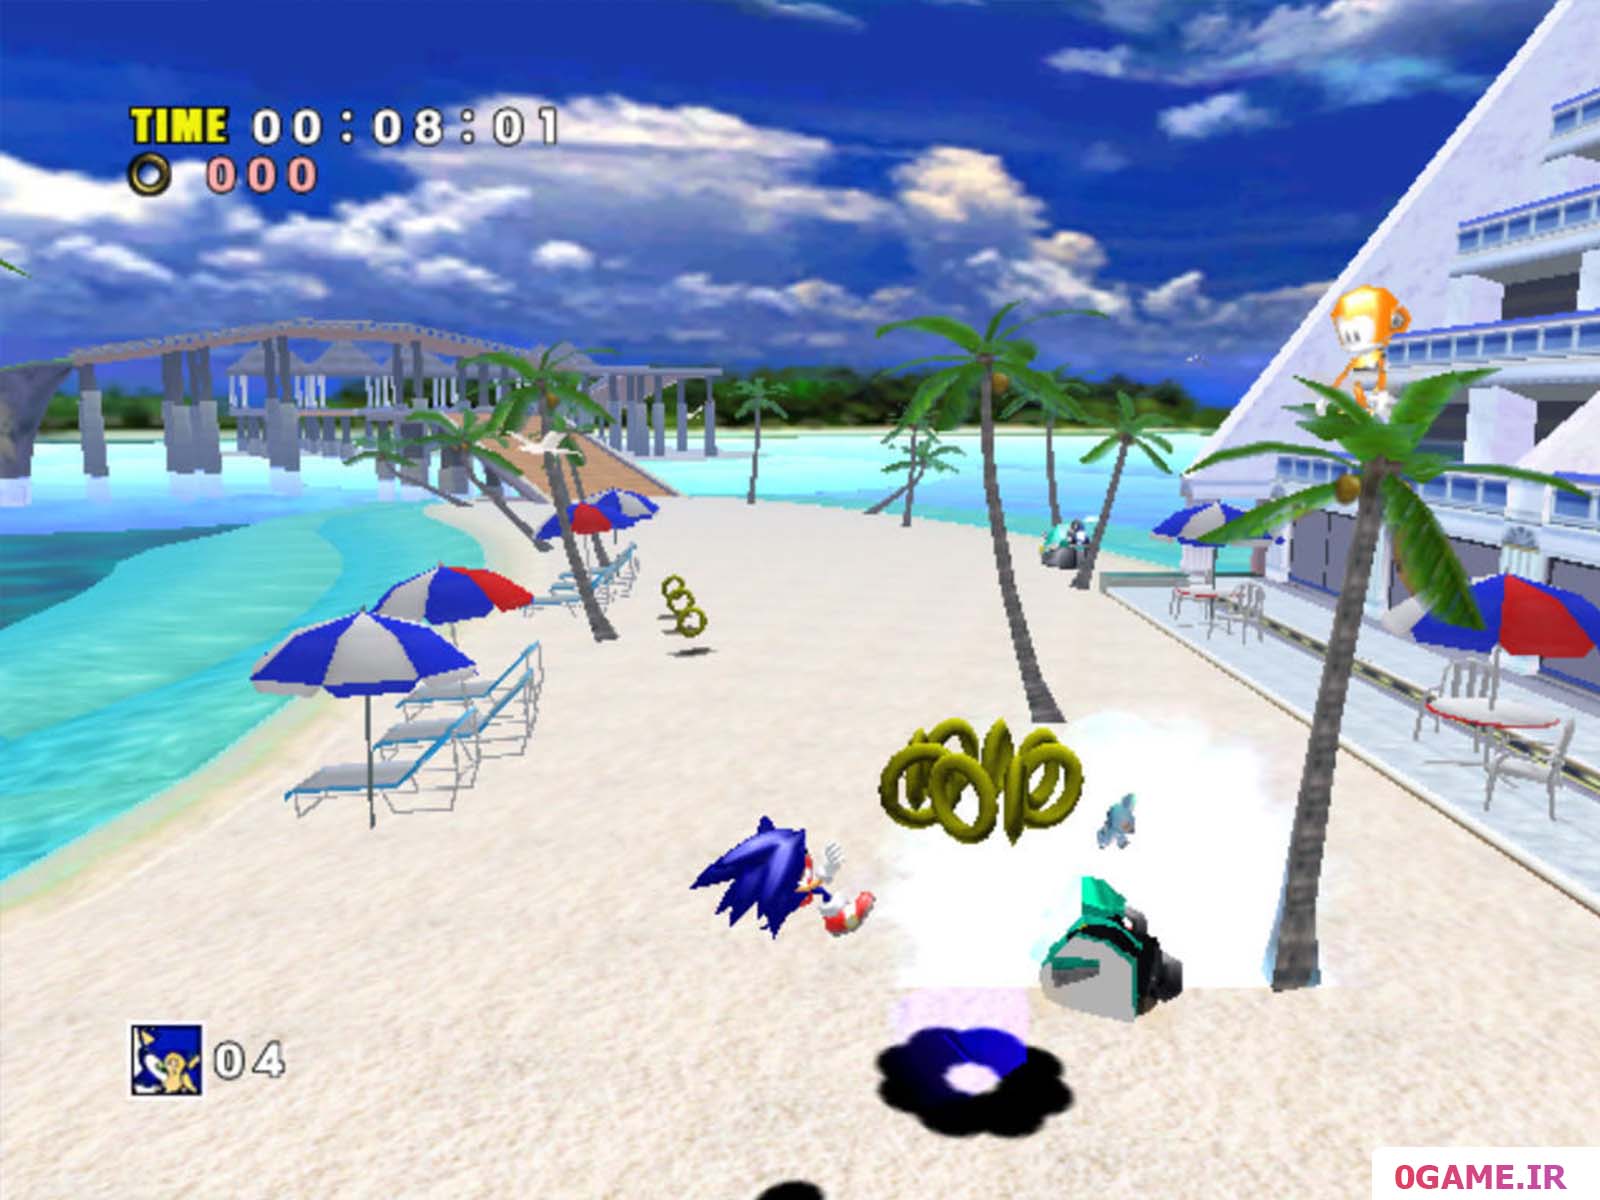 دانلود بازی ماجرای سونیک (Sonic Adventure DX) نسخه کامل برای کامپیوتر